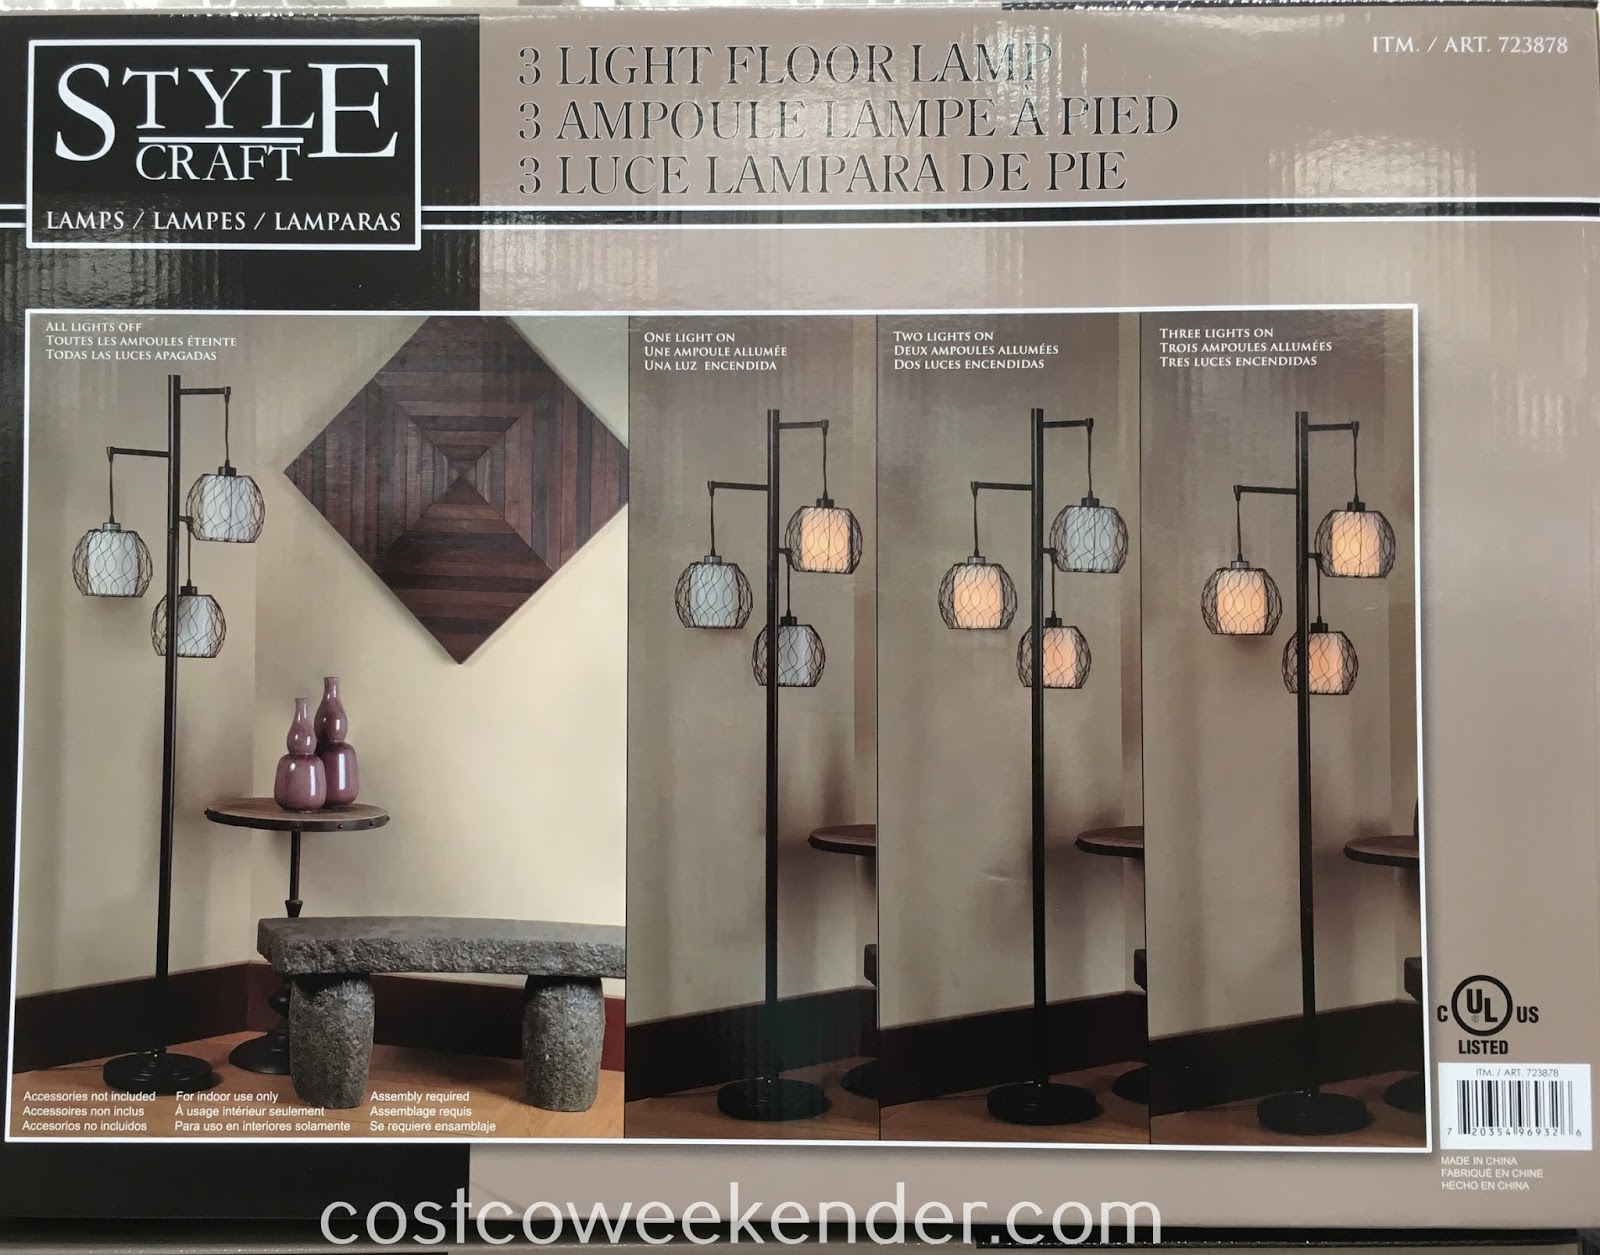 Stylecraft 3 Light Floor Lamp Costco Weekender for proportions 1600 X 1255